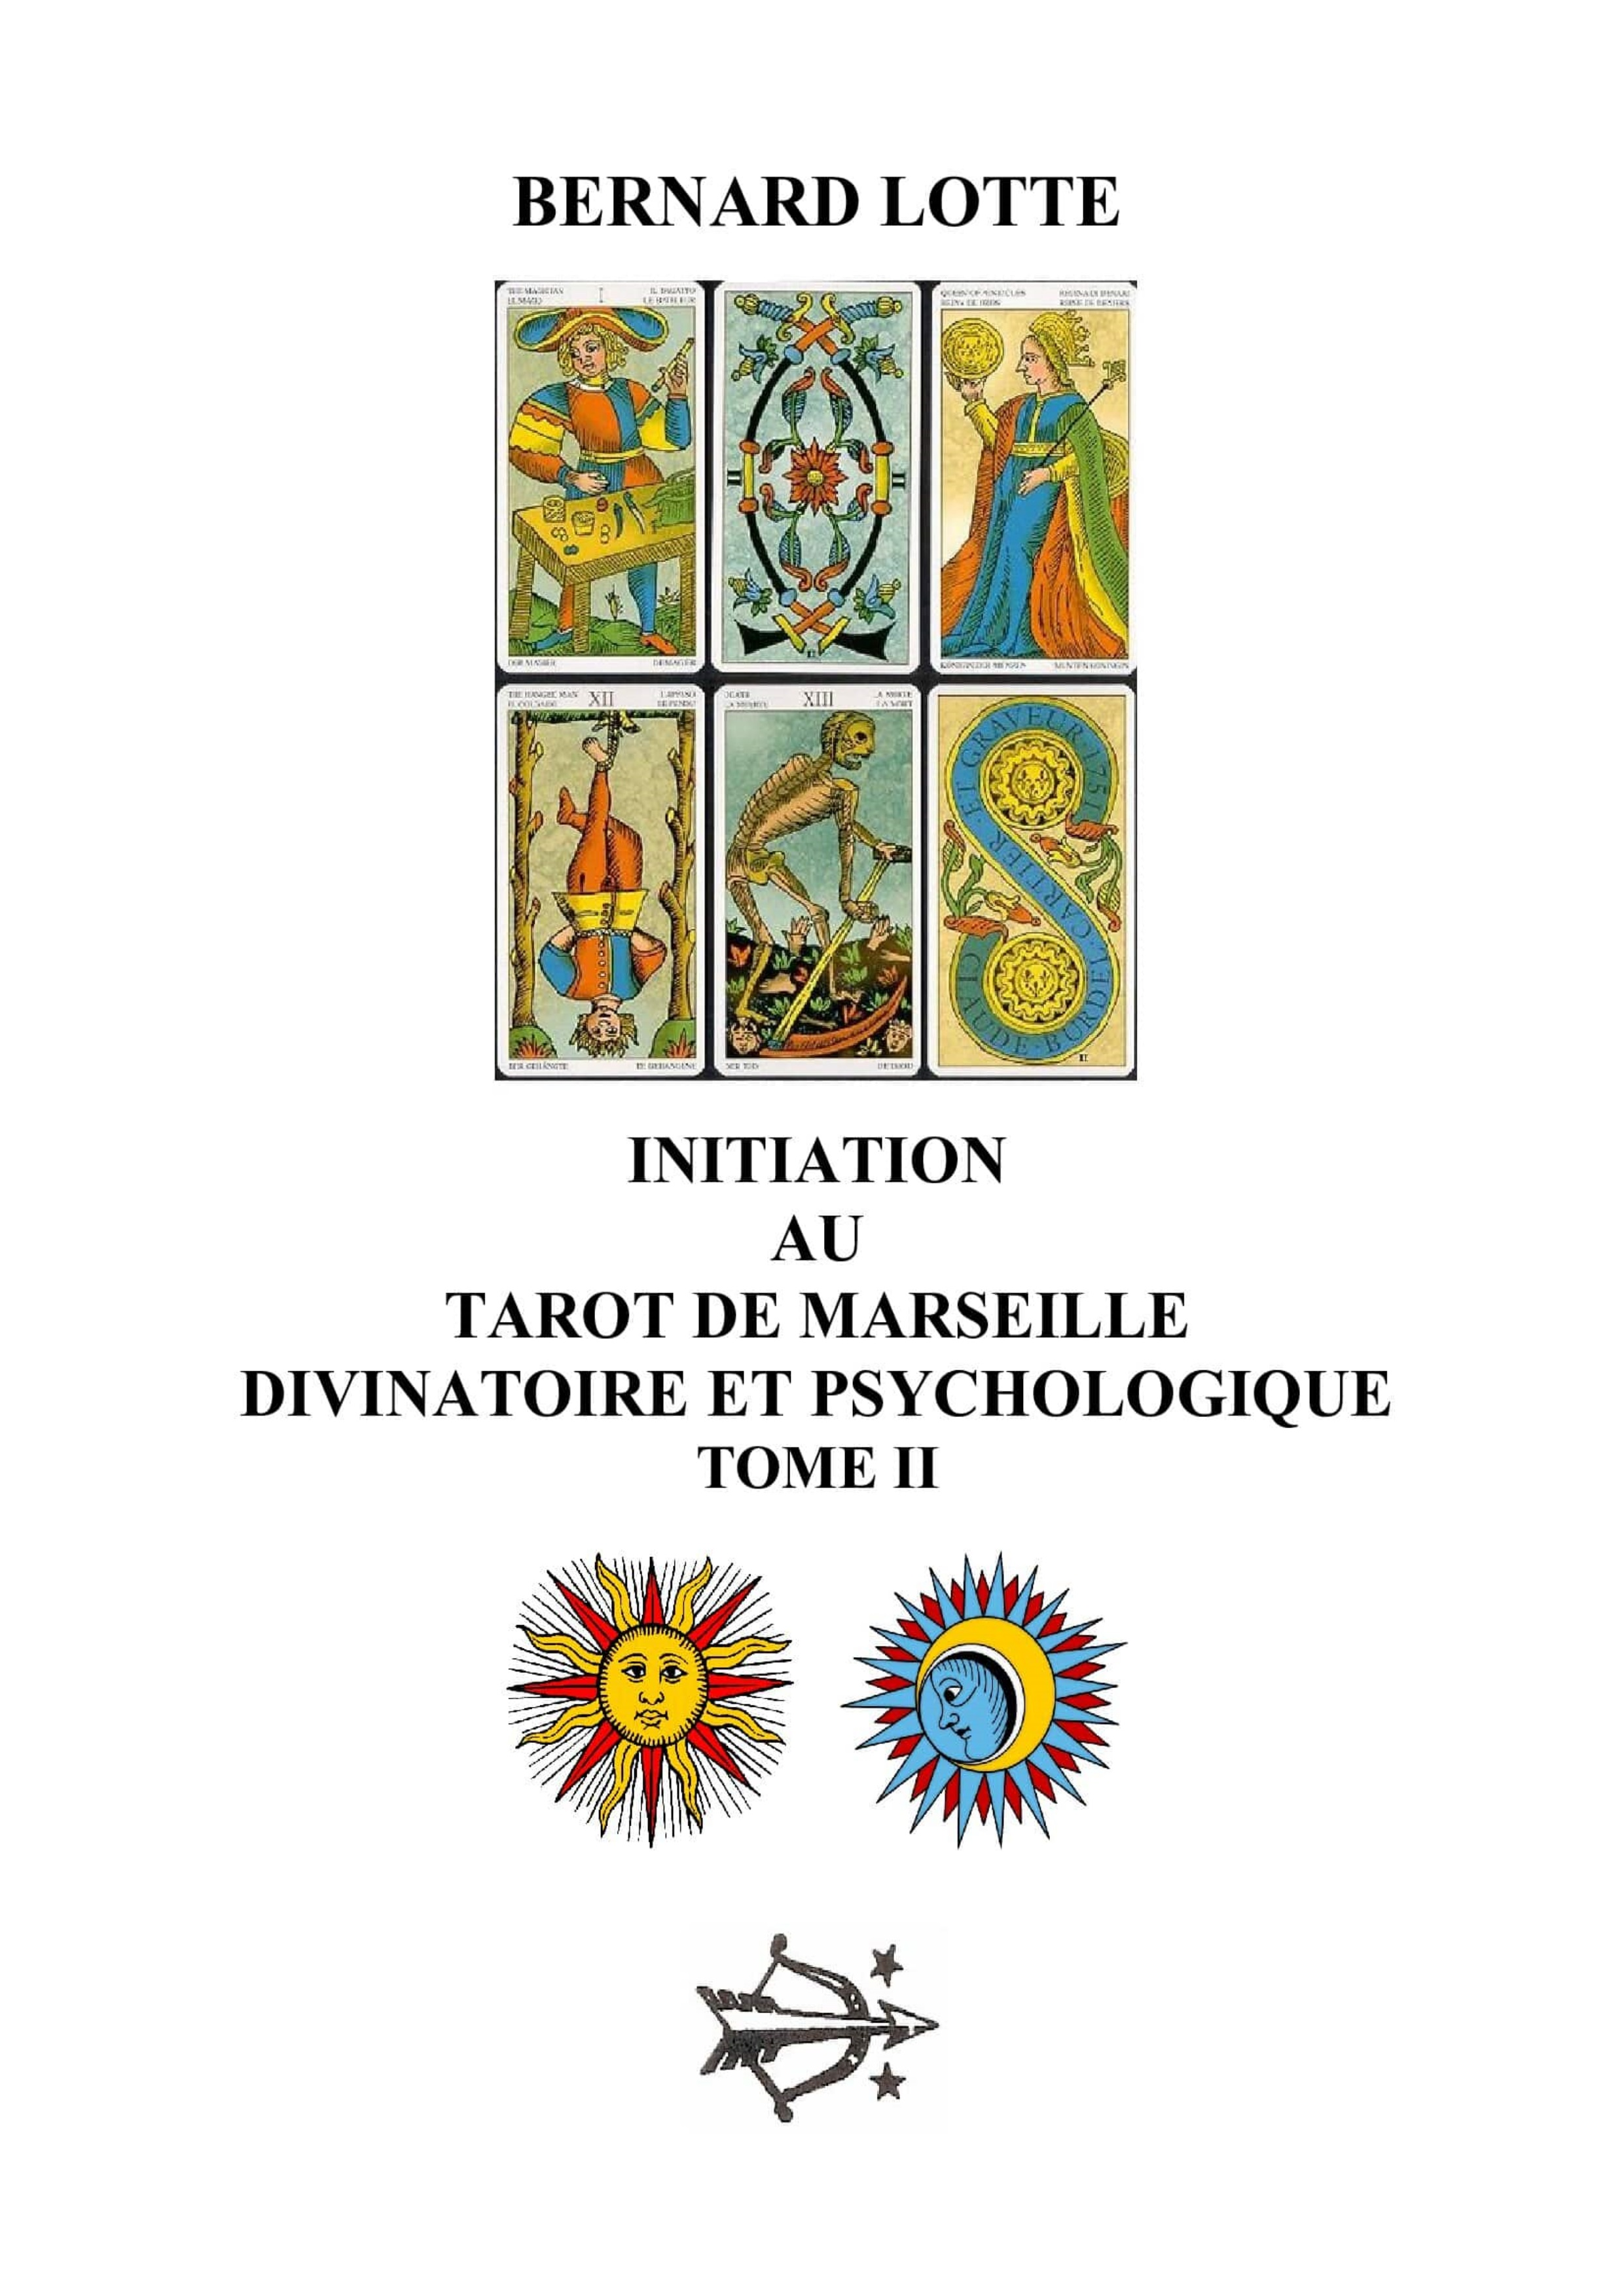 Initiation au Tarot de Marseille